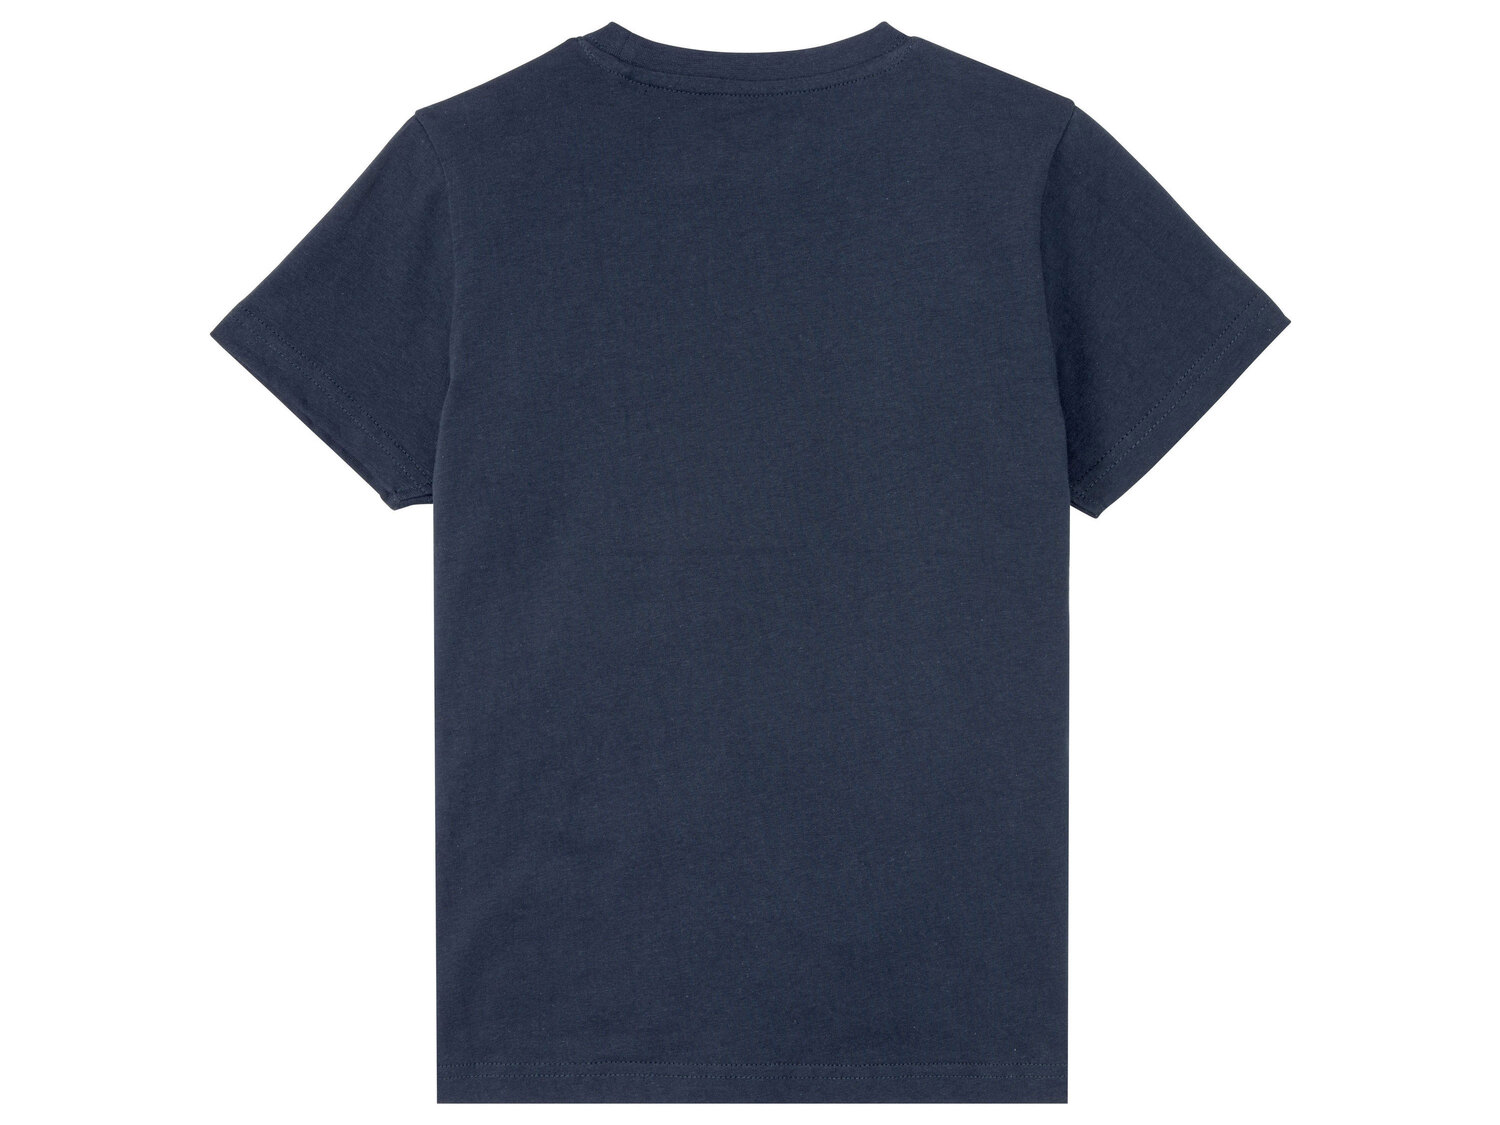 T-shirt chłopięcy z bawełny , cena 9,99 PLN 
- rozmiary: 122-164
- 100% bawełny
Dostępne ...